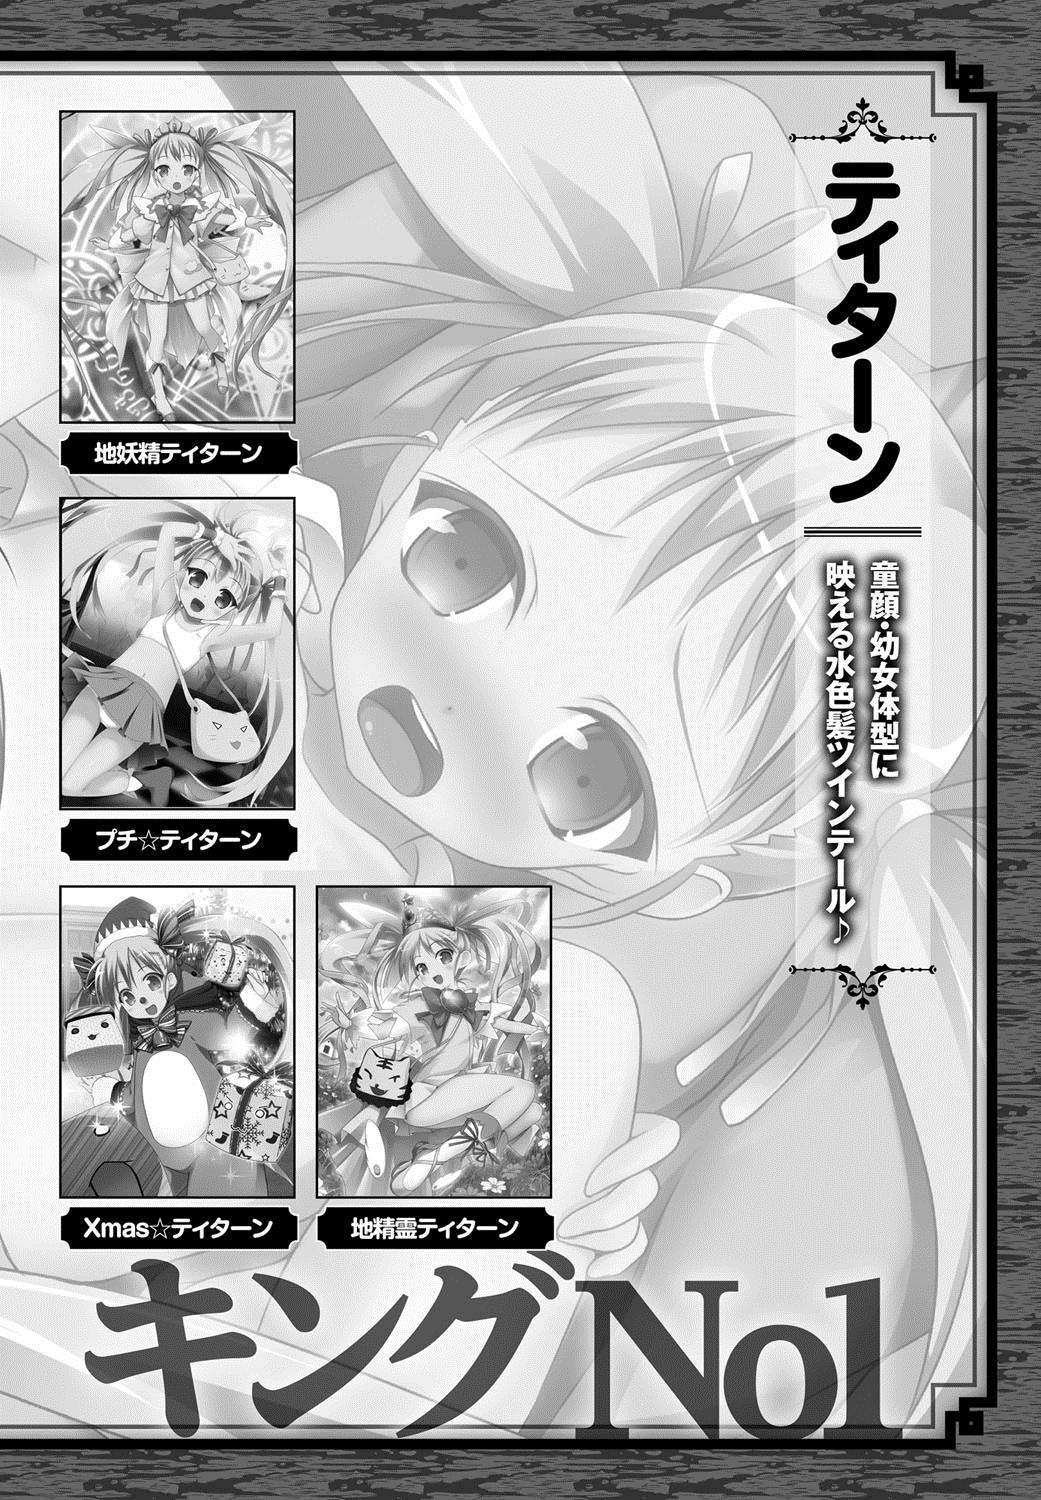 [Anthology] Lord of Valkyrie Adult - Comic Anthology R18 Handakara Saigomade... Mou, Kishi-sama no Ecchi♪ 110